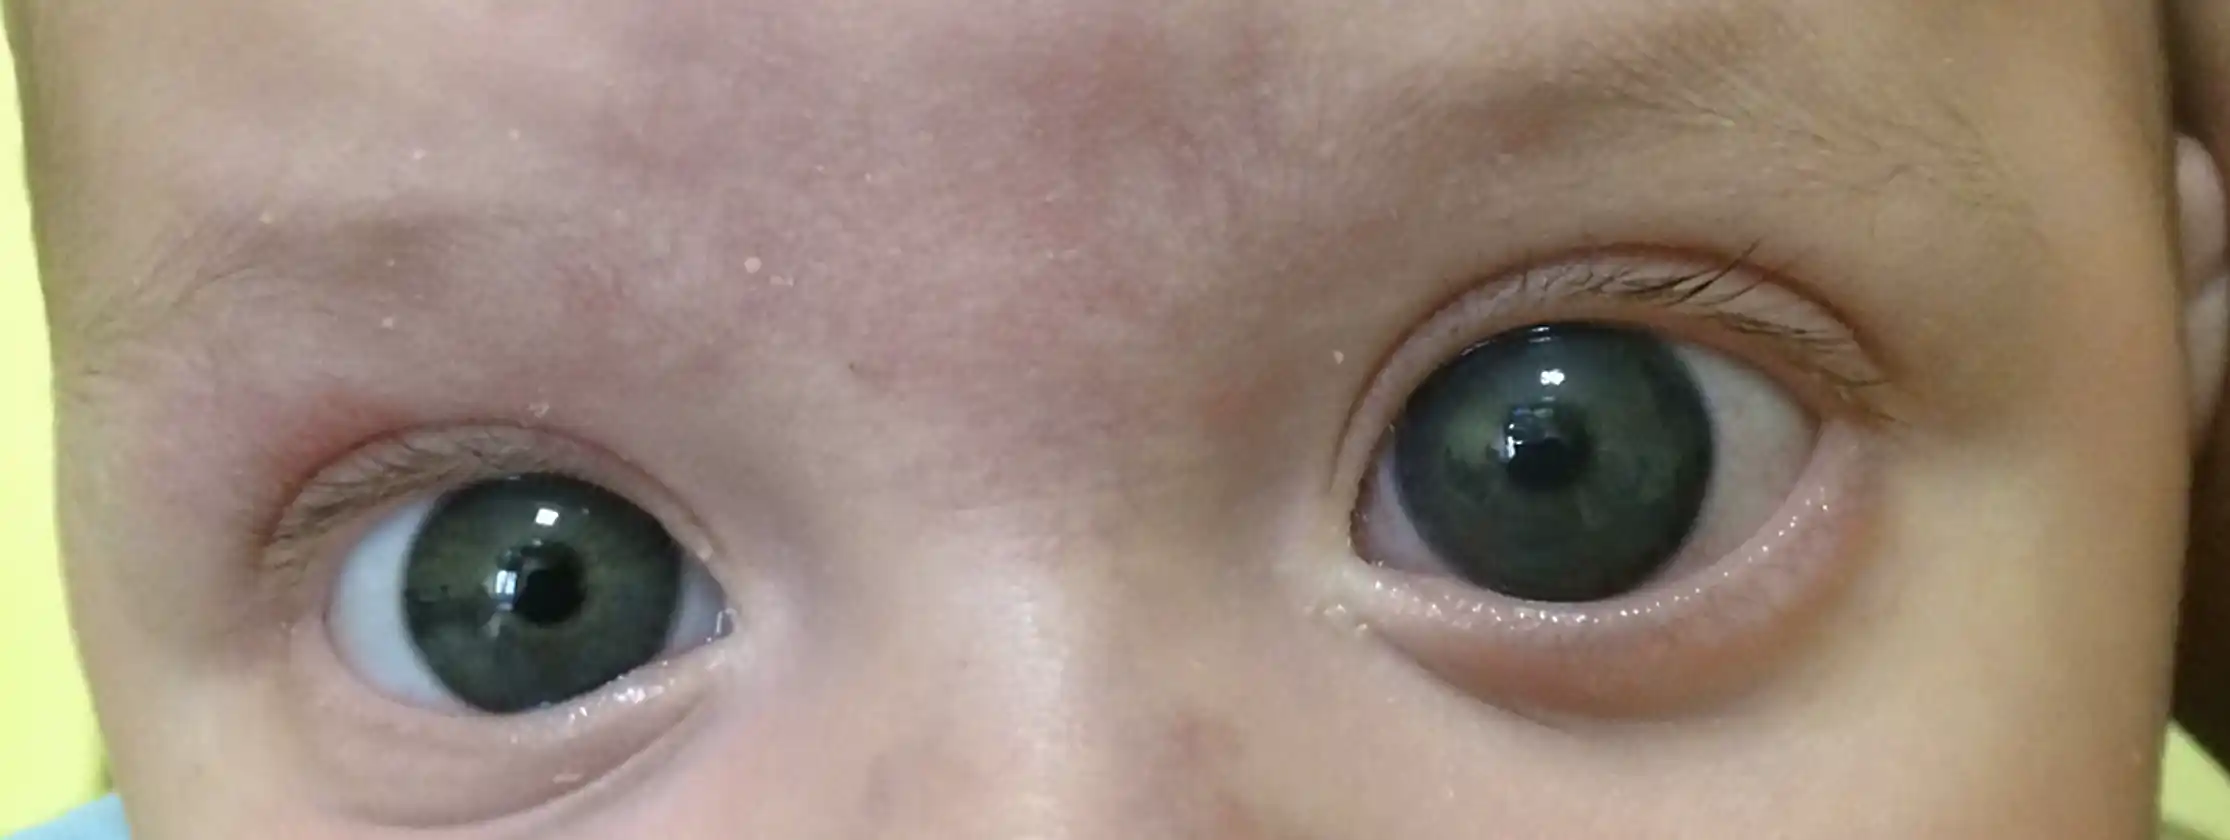 Buftalmo - problema alla cornea e all'occhio